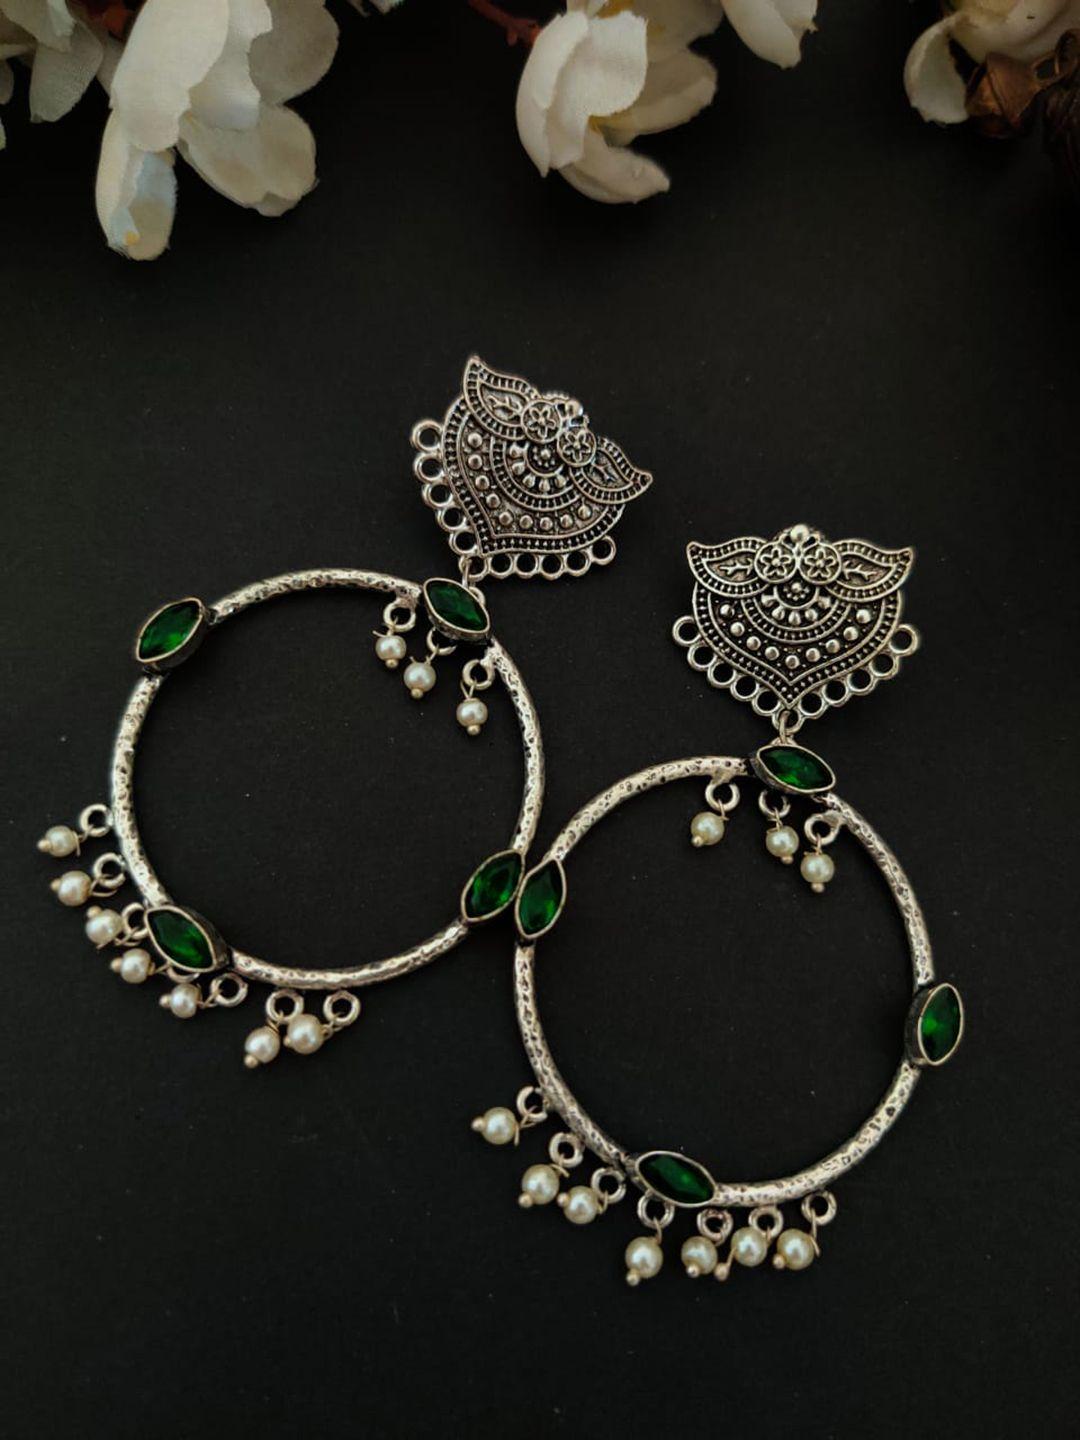 binnis wardrobe silver-toned silver plated circular hoop earrings